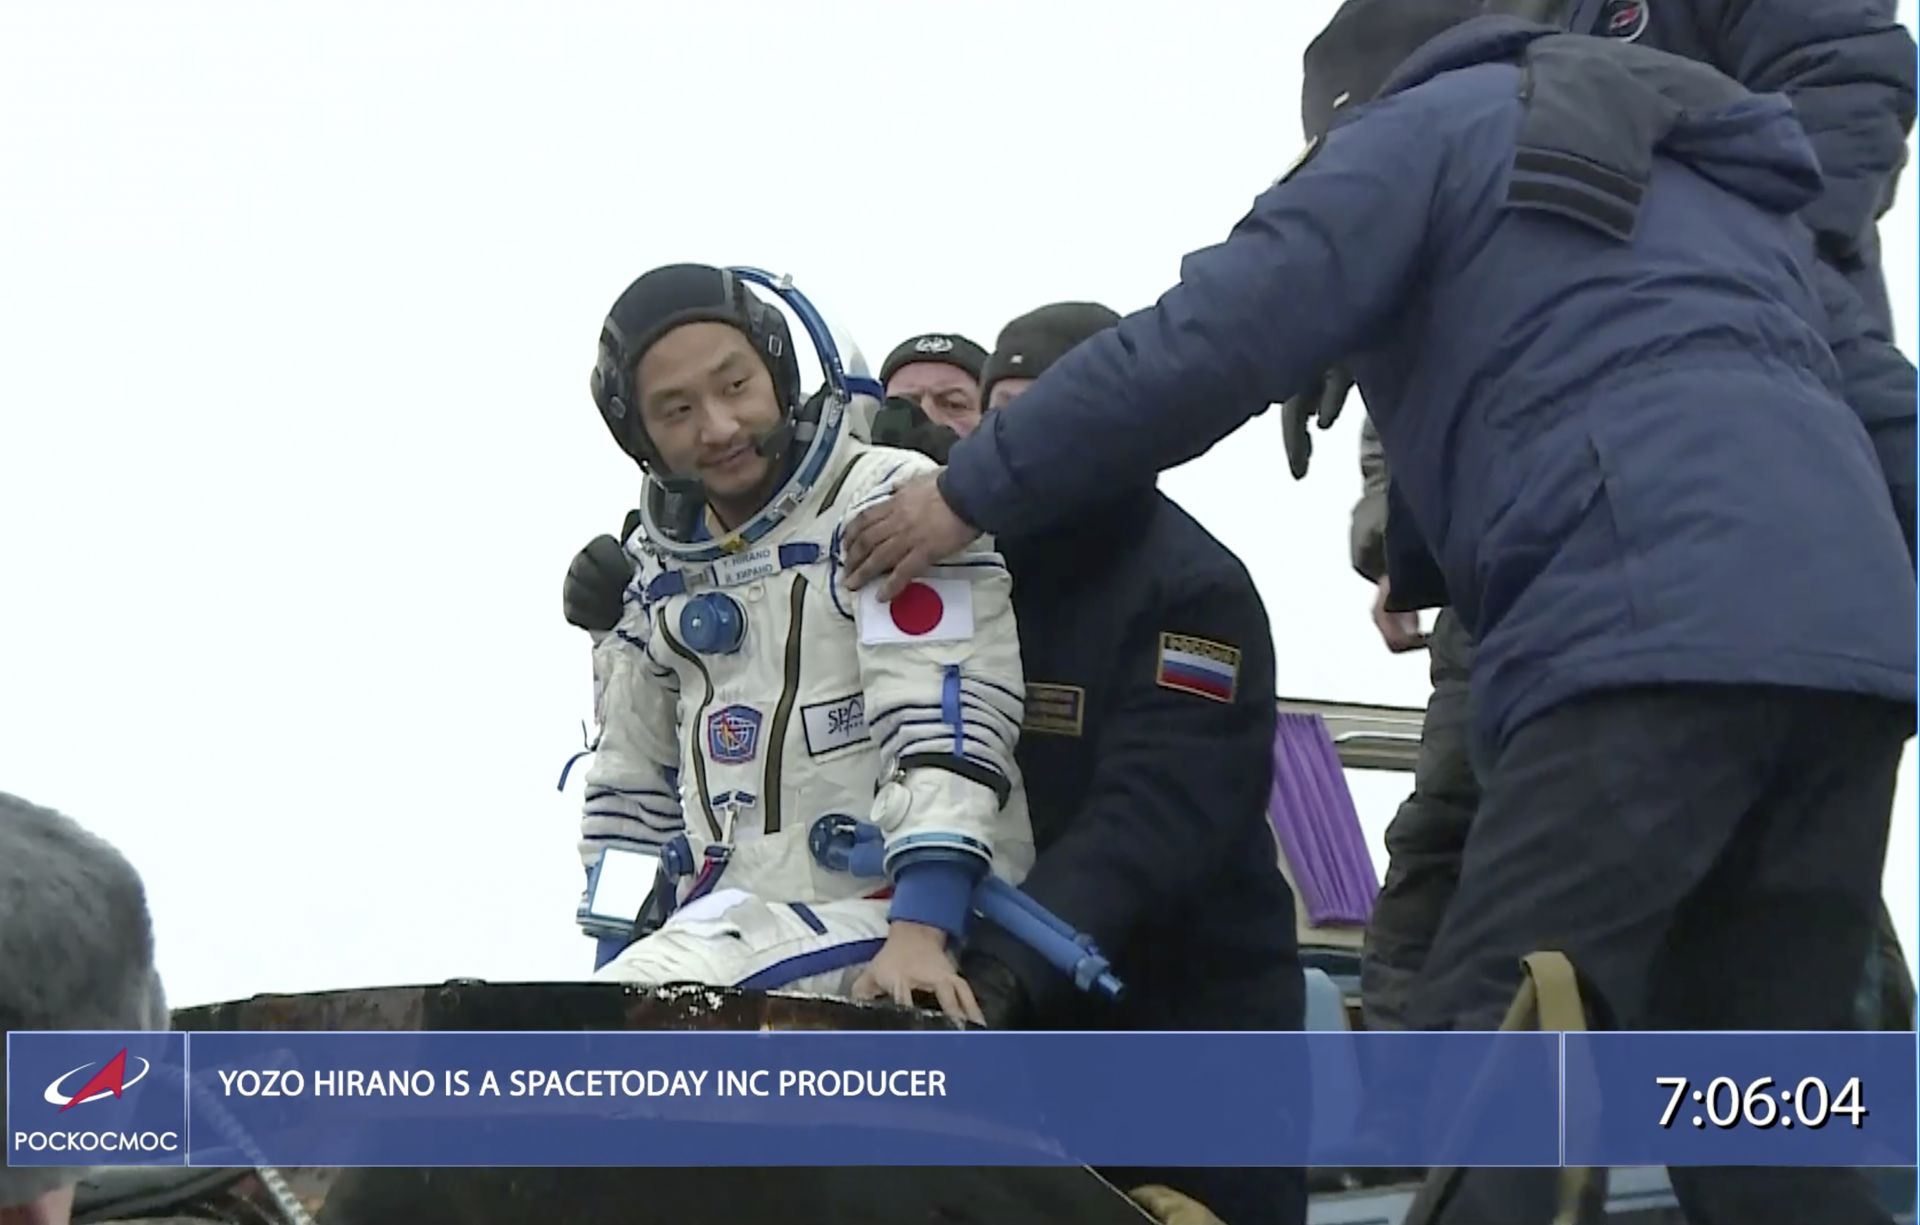 Спасителният екип на руската космическа агенция помага на участника в космическия полет Йозо Хирано да излезе от капсулата малко след кацането на руската космическа капсула Союз MS-20